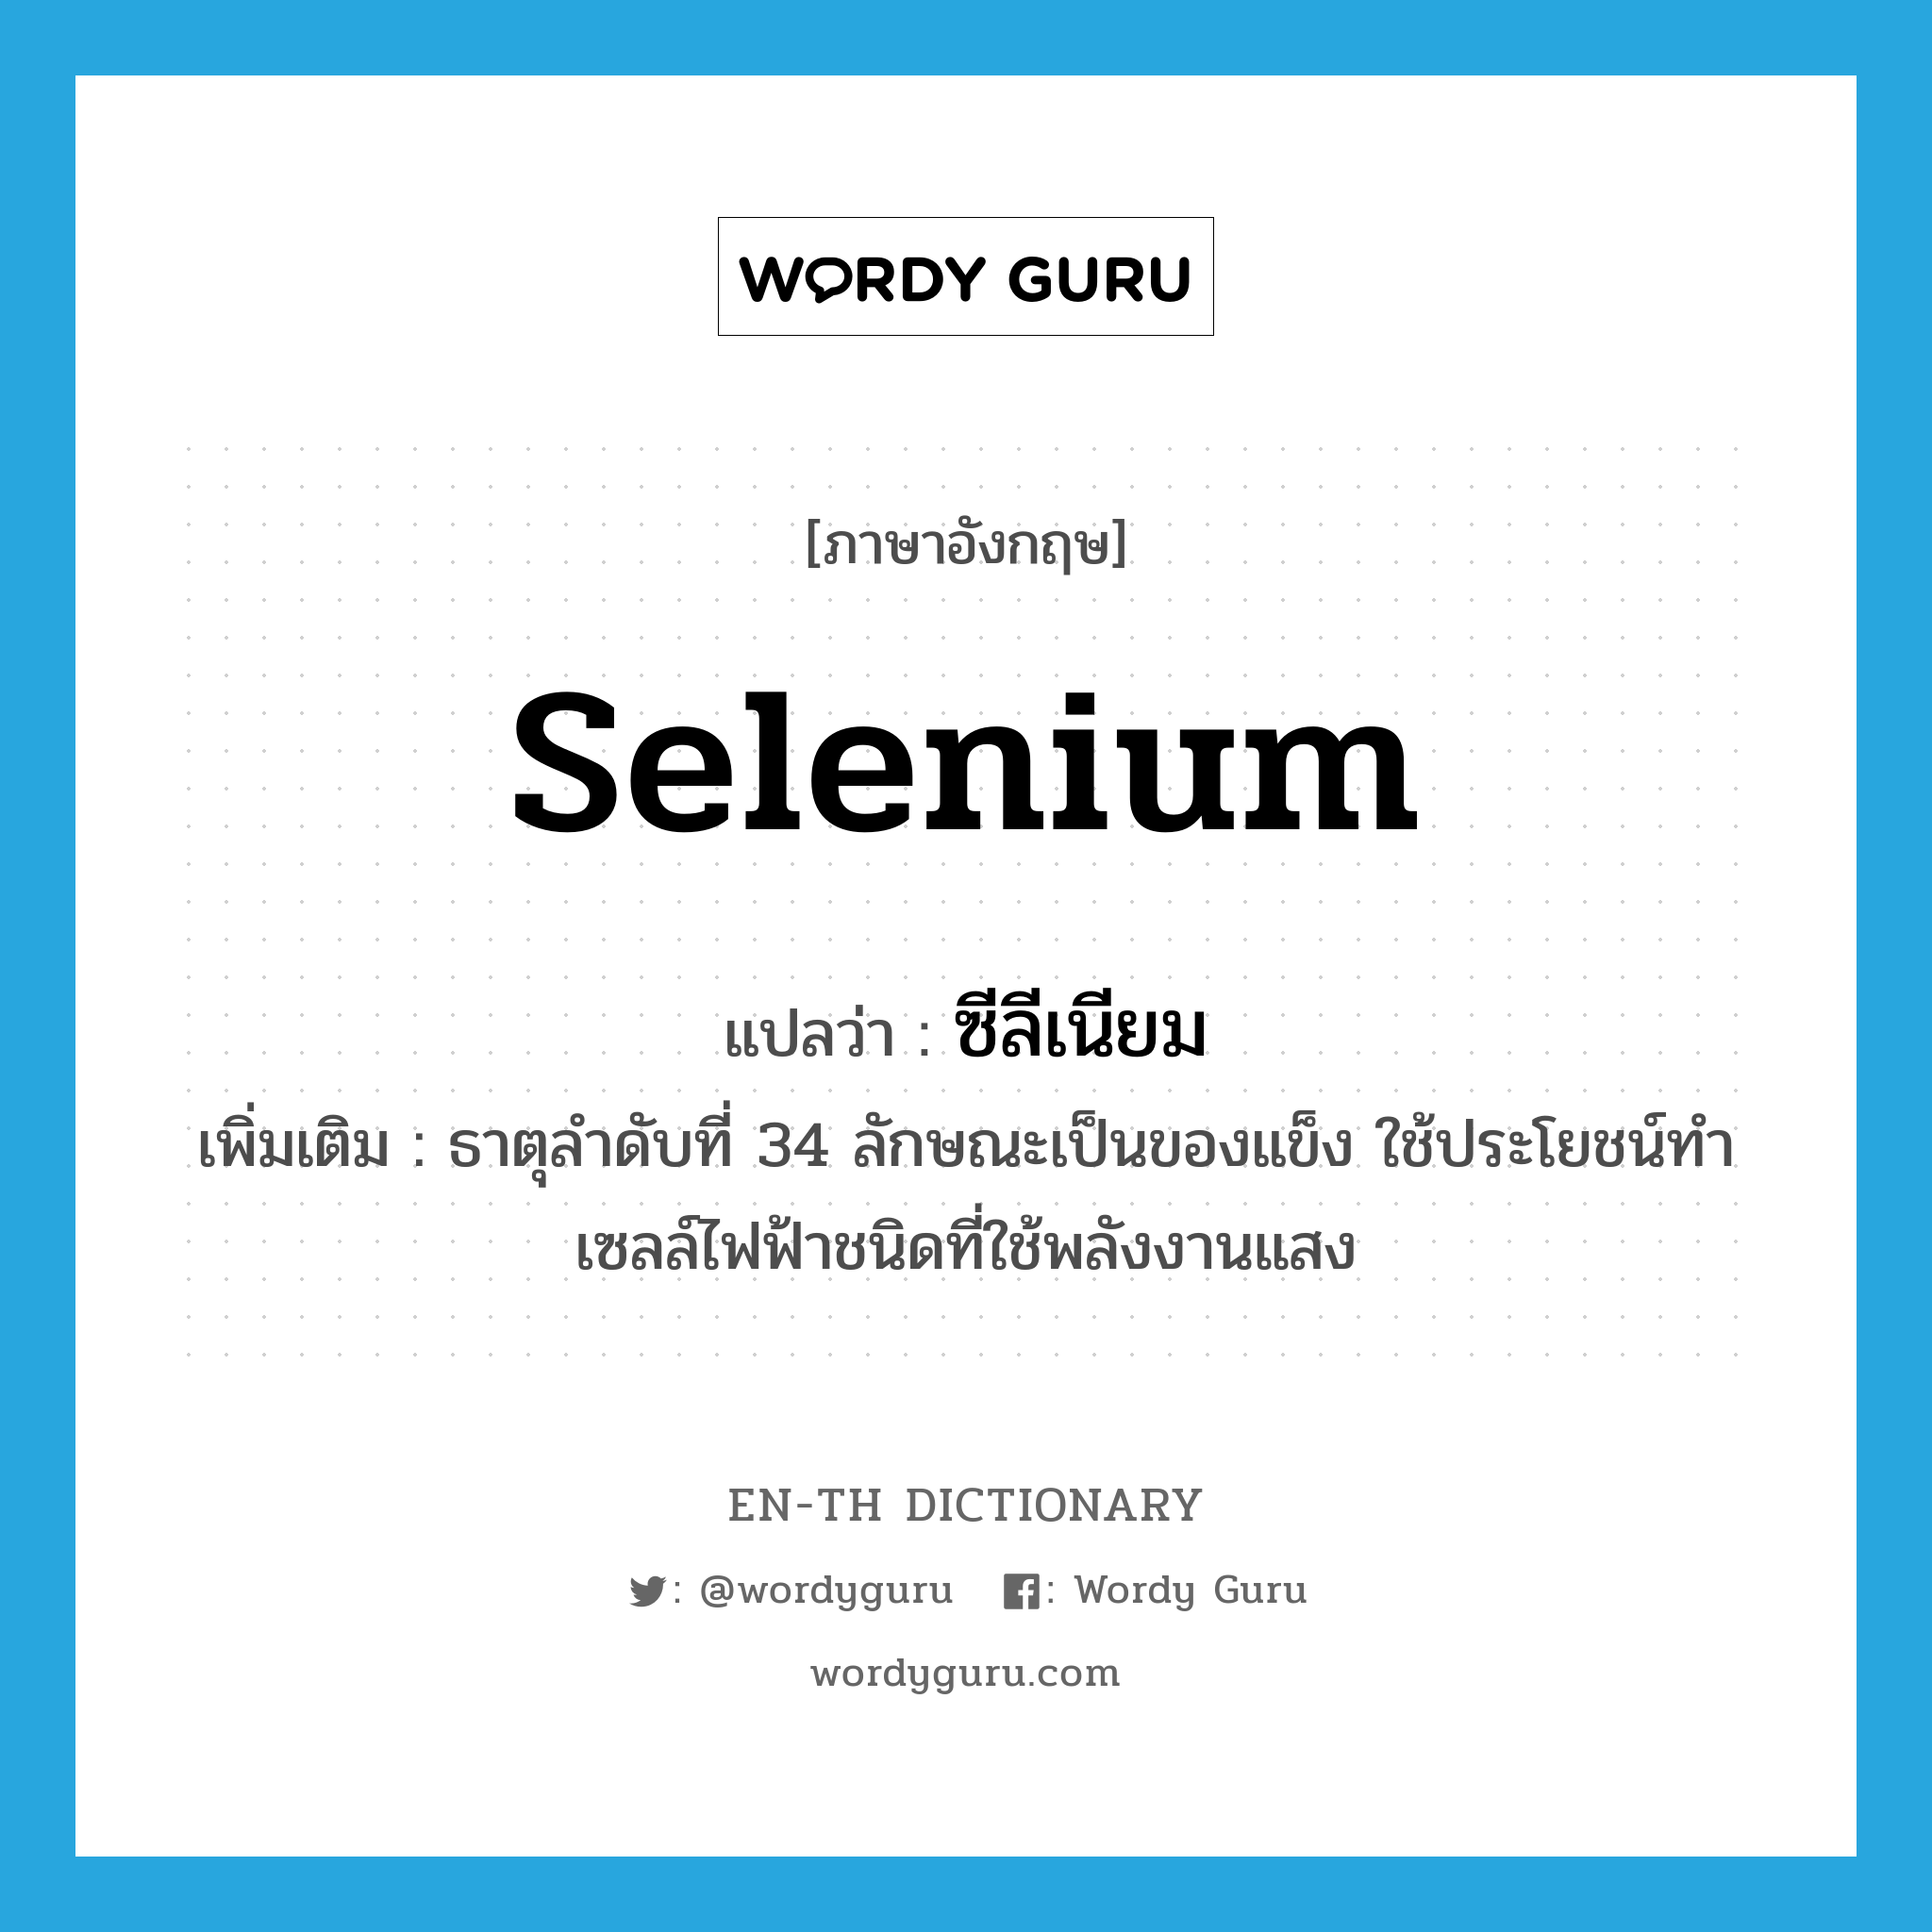 selenium แปลว่า?, คำศัพท์ภาษาอังกฤษ selenium แปลว่า ซีลีเนียม ประเภท N เพิ่มเติม ธาตุลำดับที่ 34 ลักษณะเป็นของแข็ง ใช้ประโยชน์ทำเซลล์ไฟฟ้าชนิดที่ใช้พลังงานแสง หมวด N